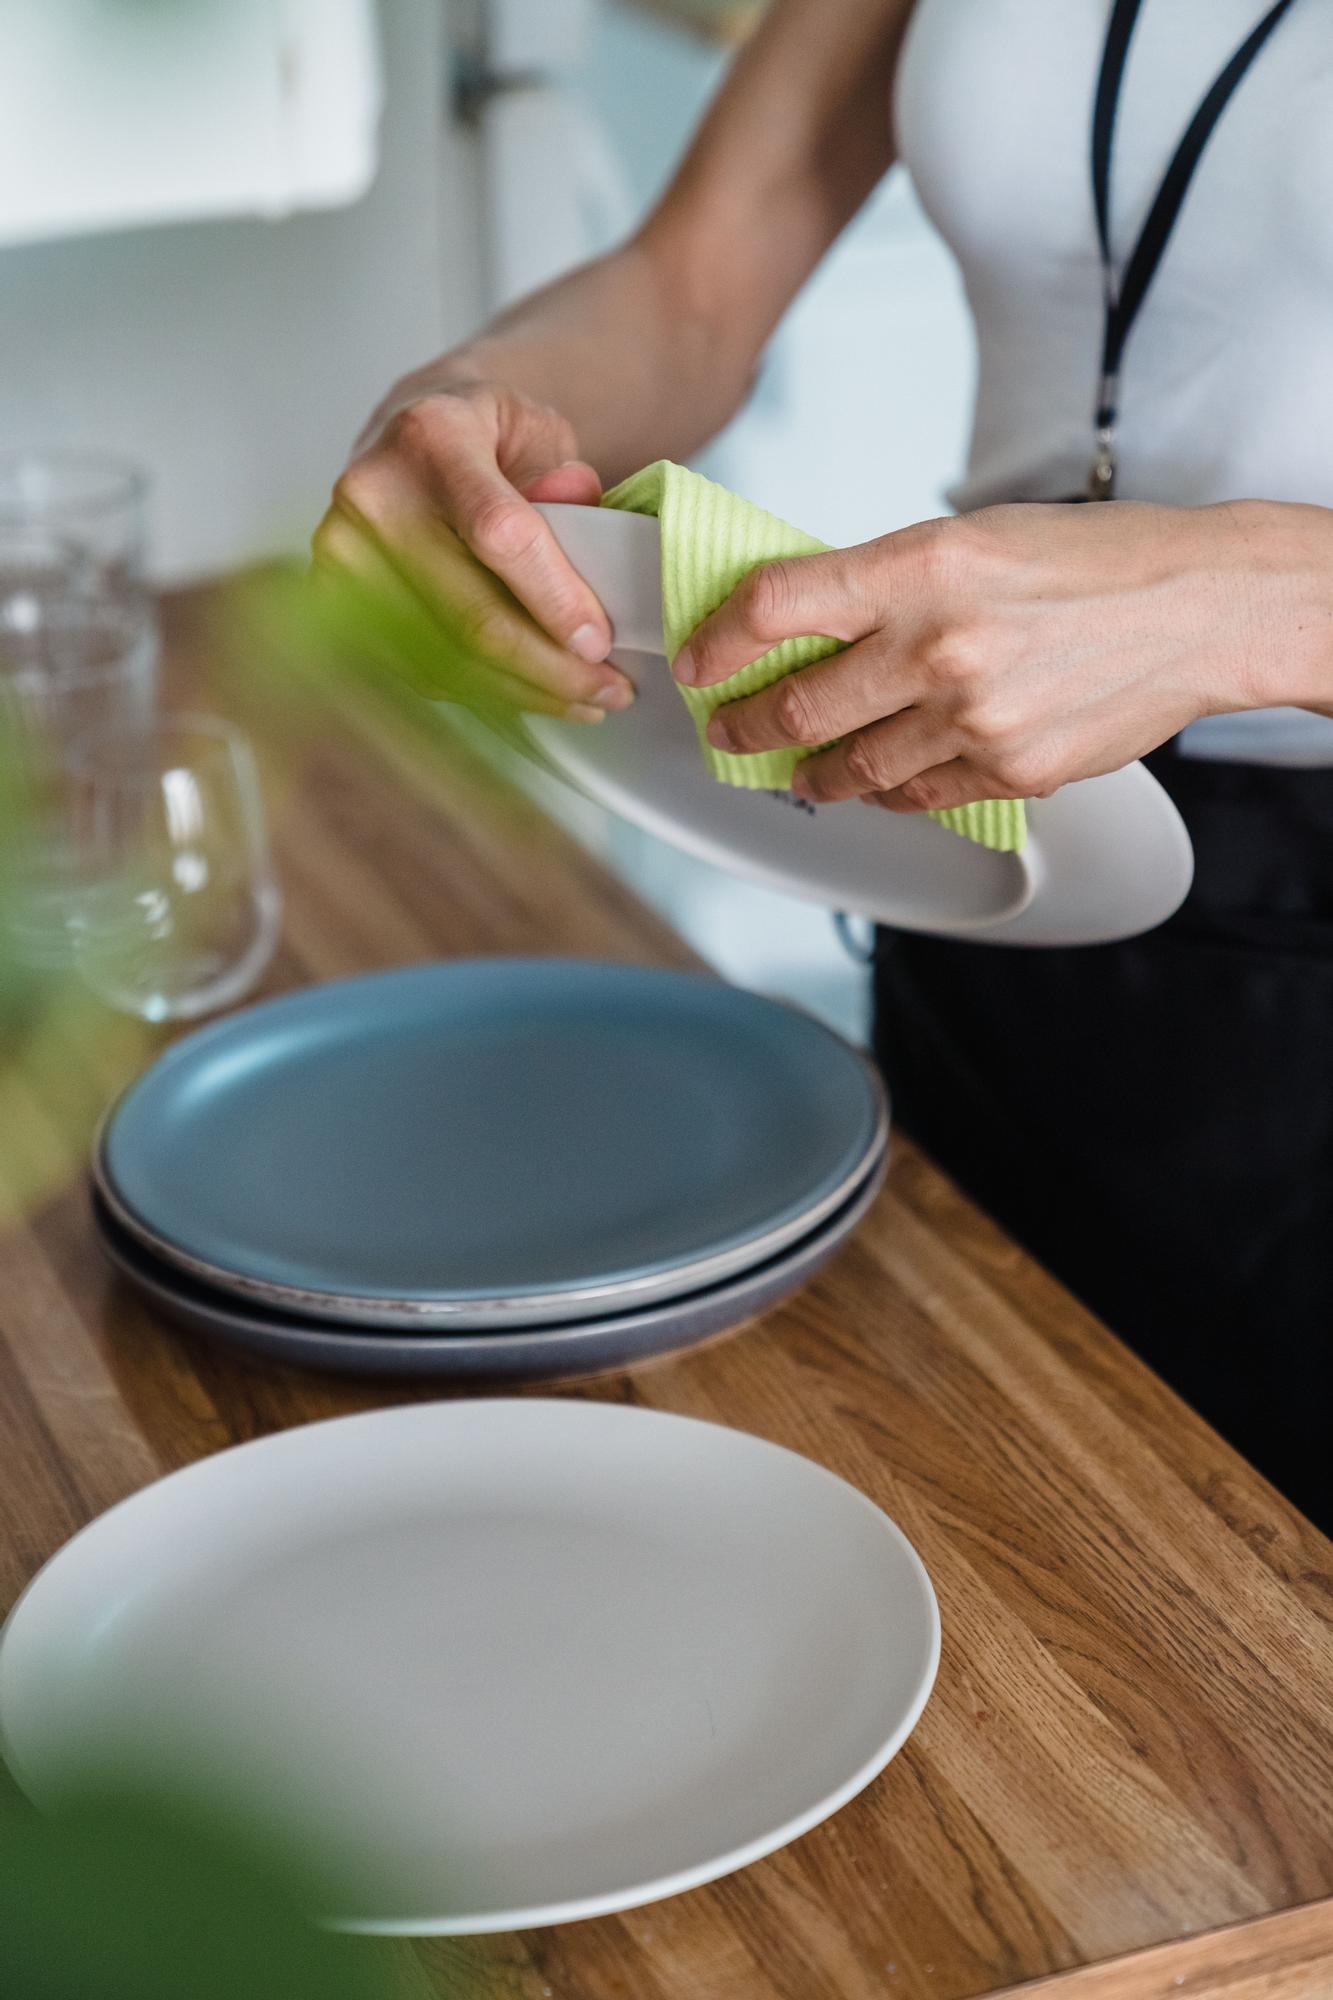 Cómo limpiar los estropajos y las bayetas de cocina?